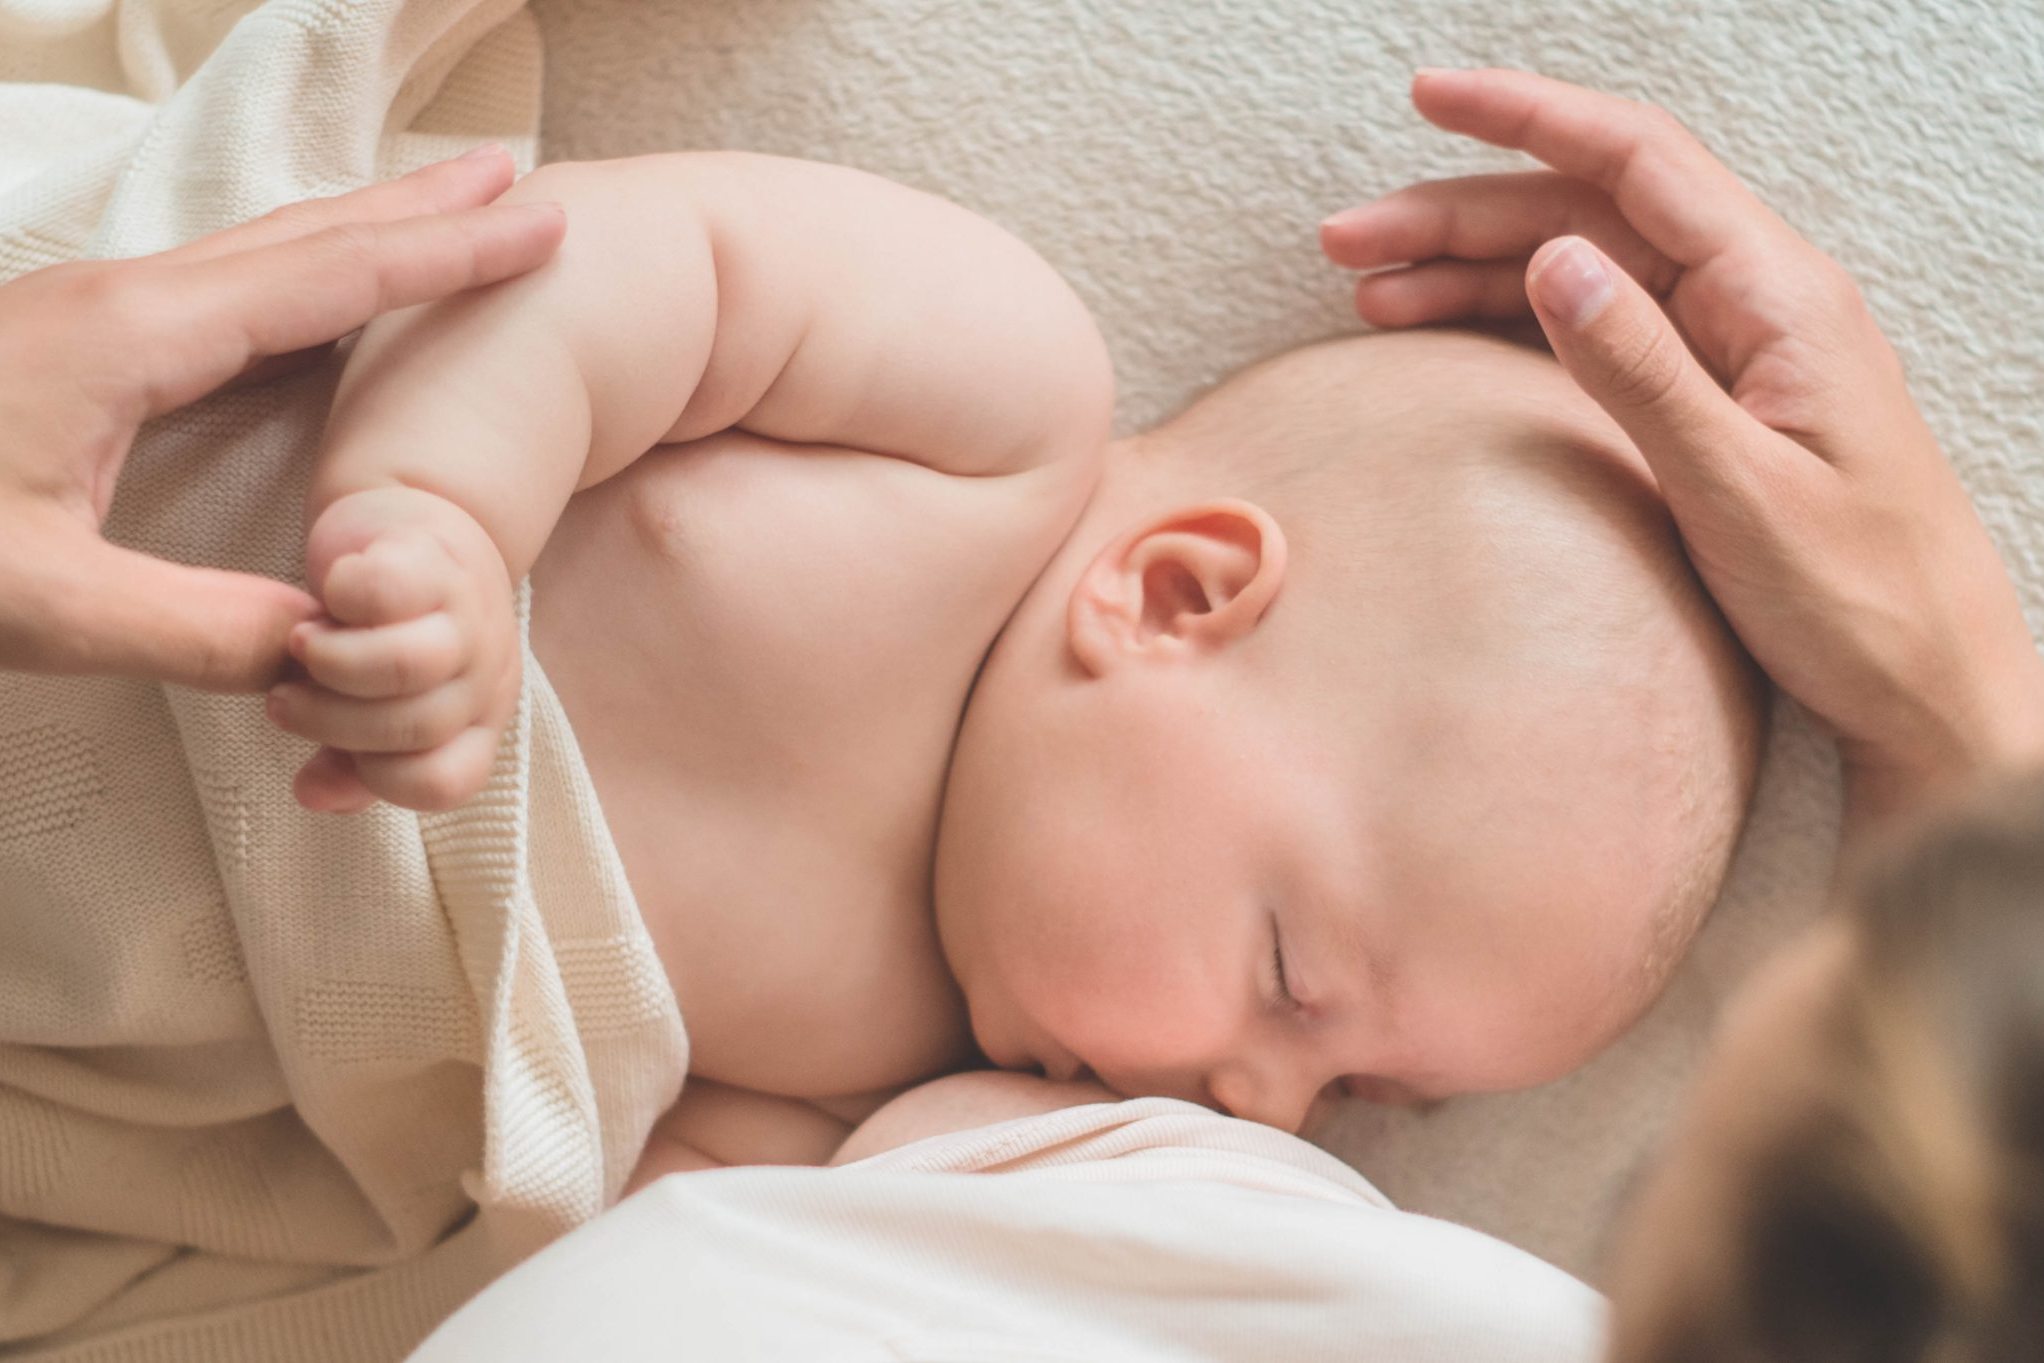 8-beneficis-de-la-lactancia-materna-tant-per-a-la-mare-com-per-al-nado-salutimes